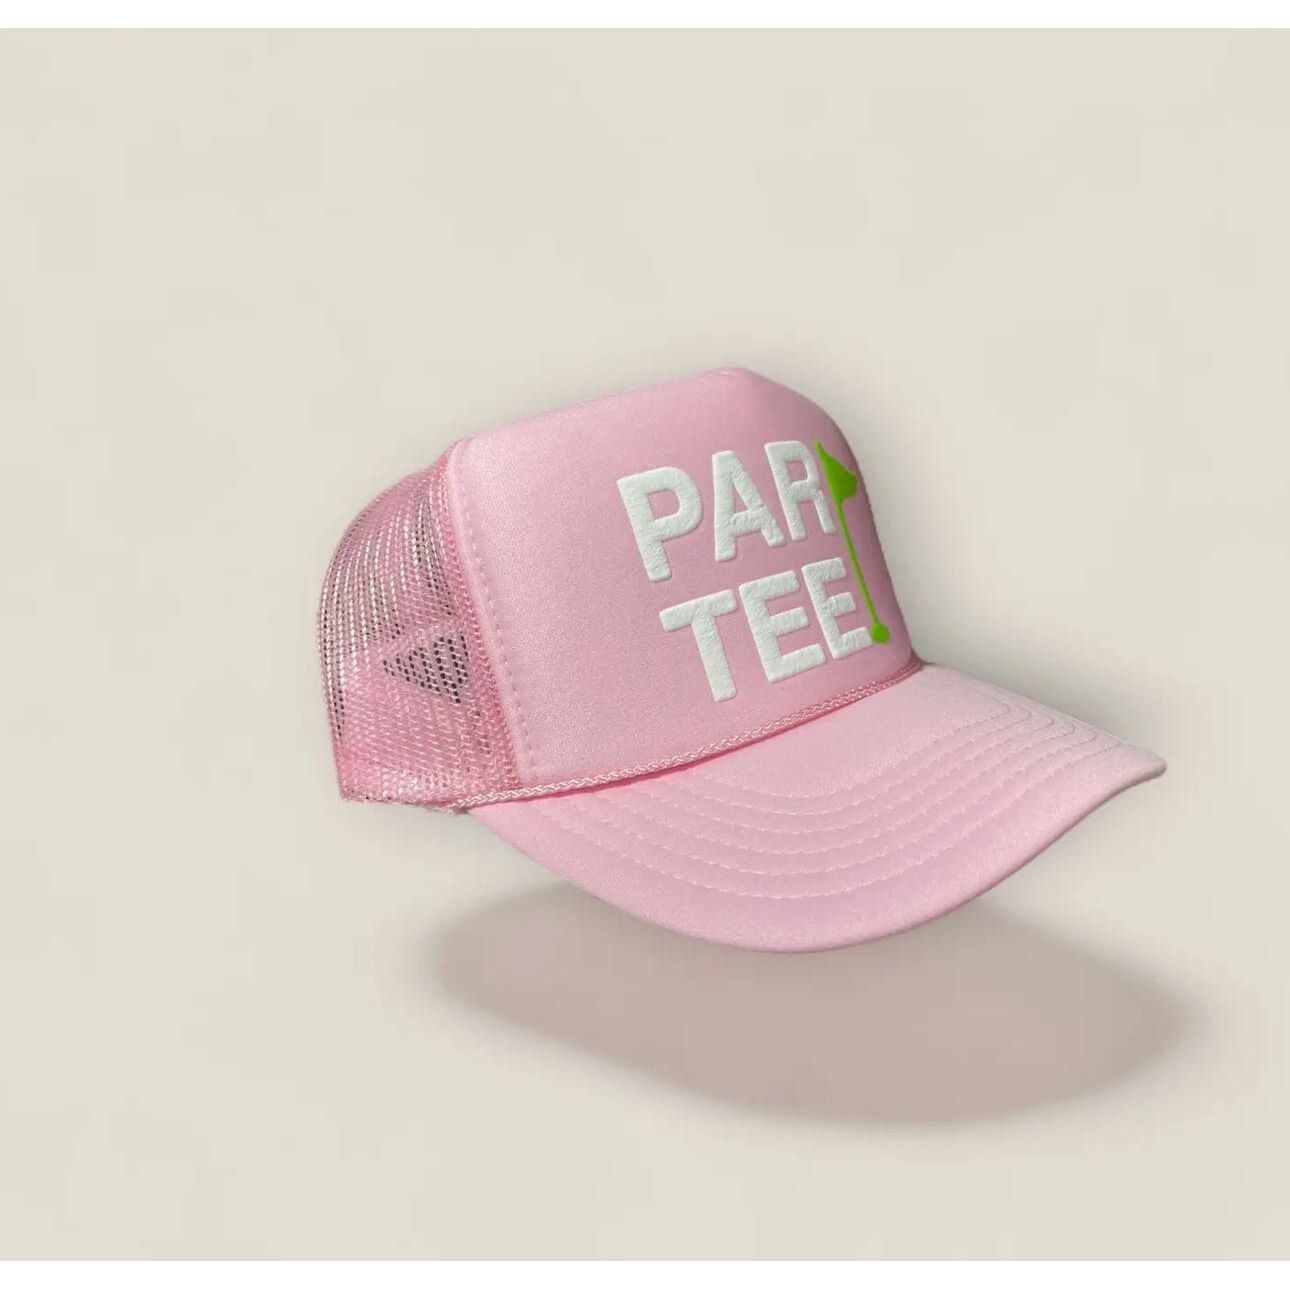 Partee Golf Trucker Hat - Pink